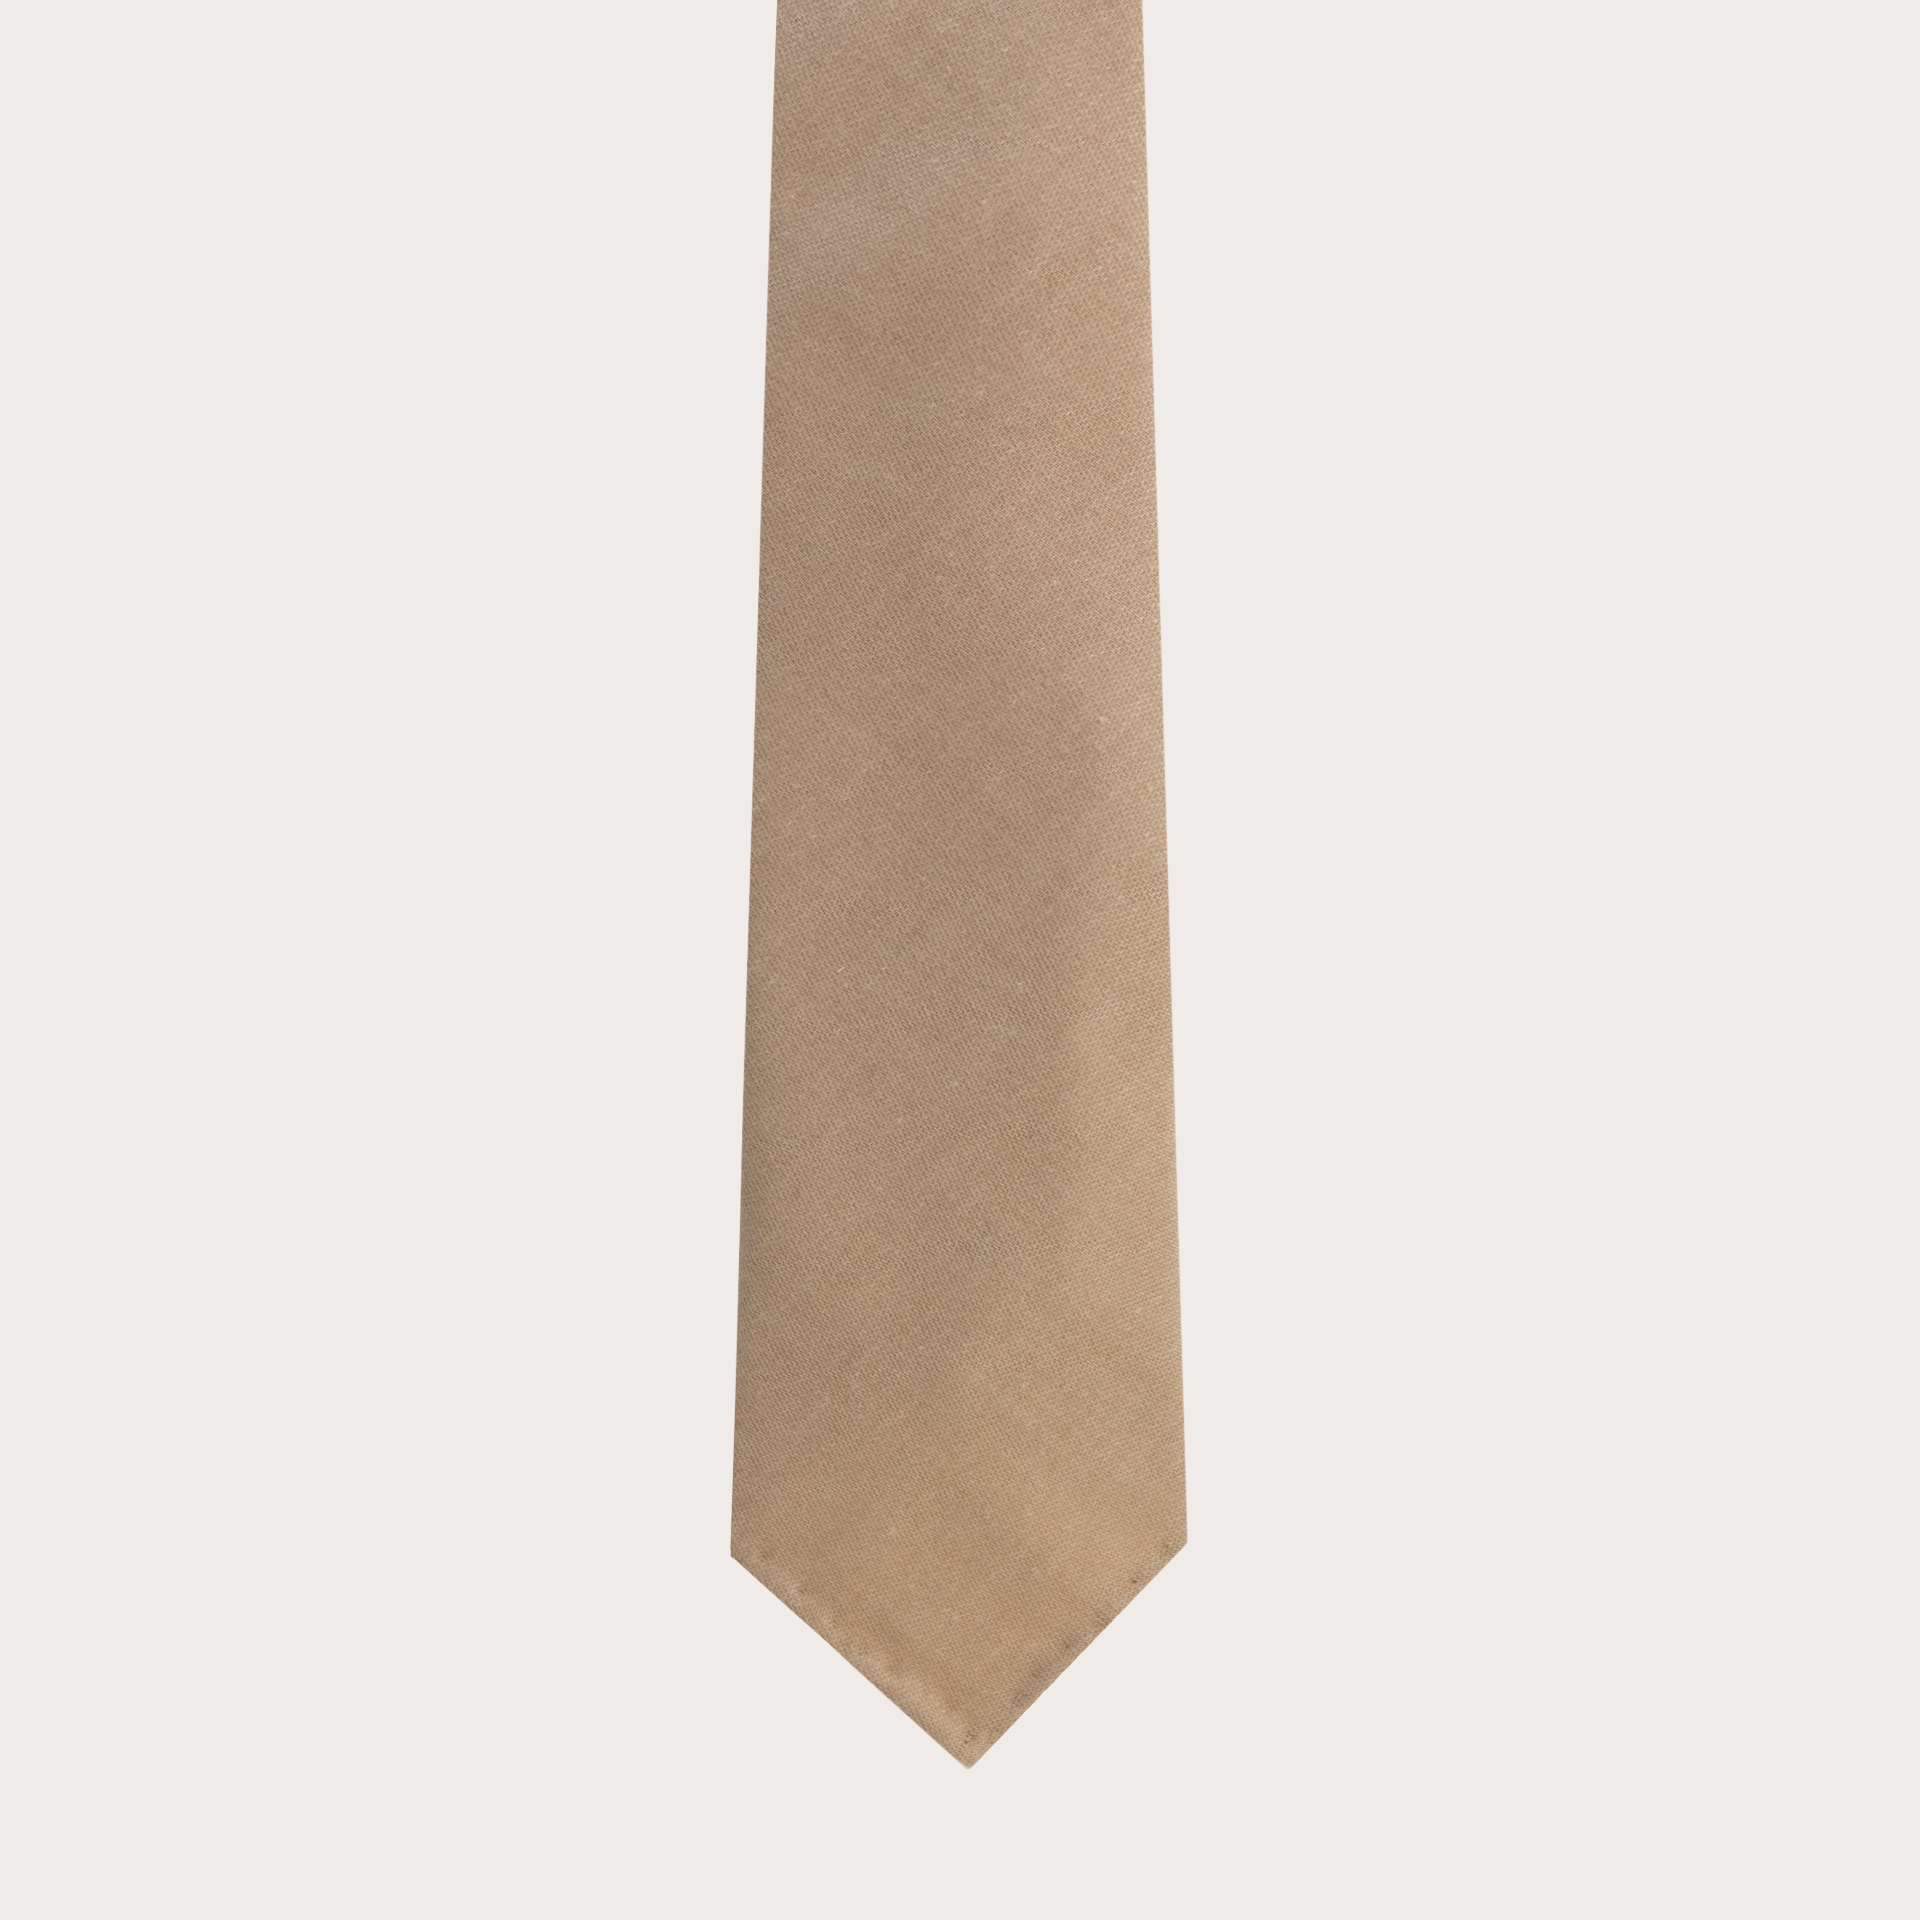 BRUCLE Cravate sans doublure beige en soie et chavre